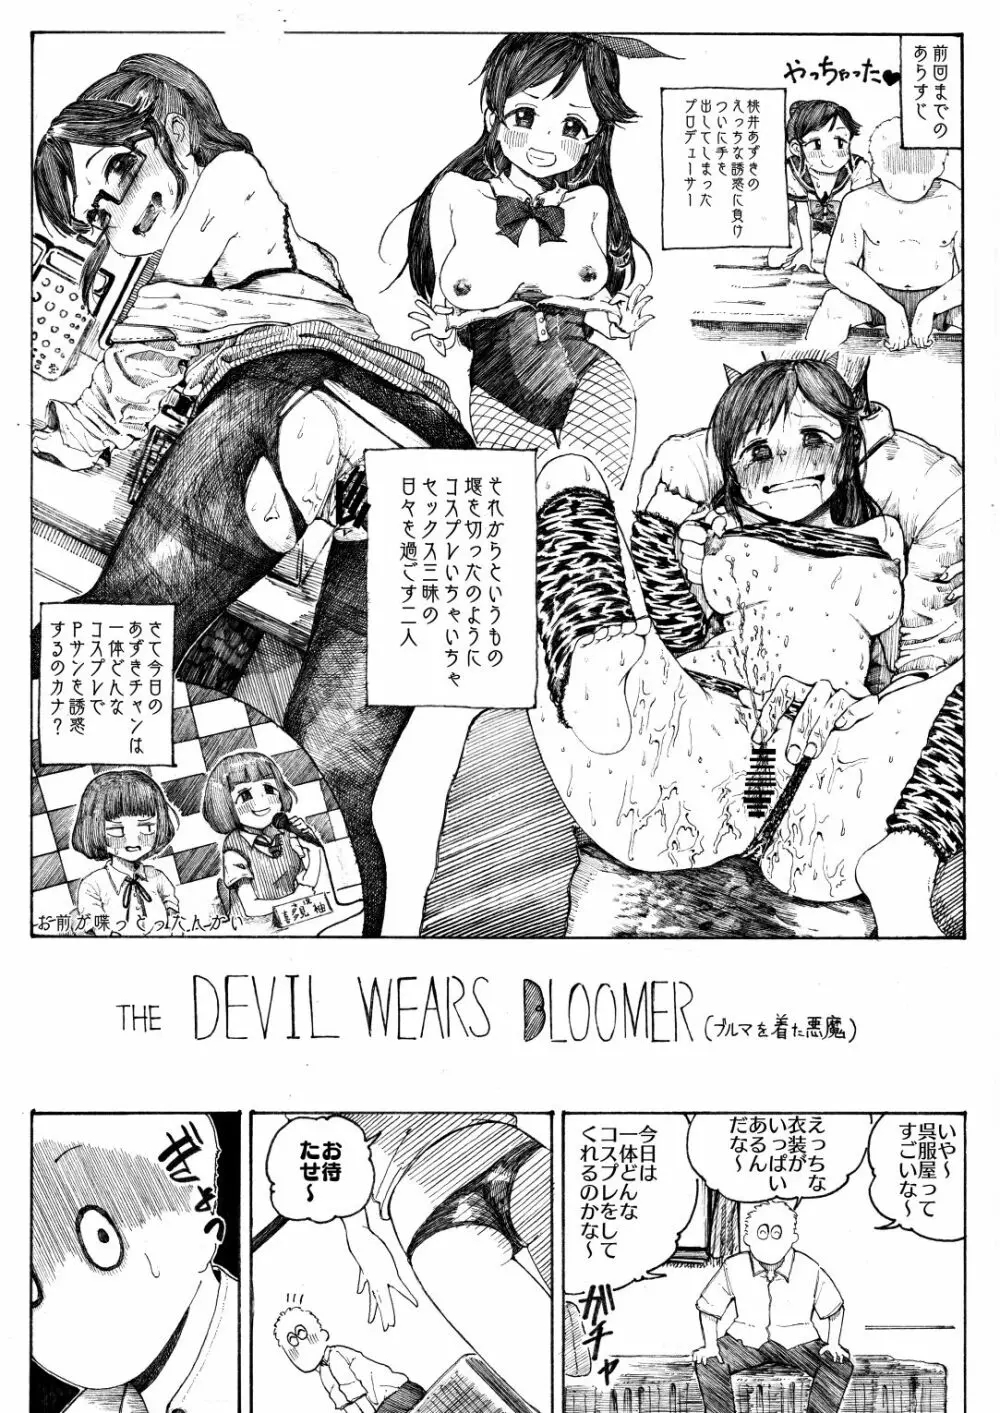 THE DEVIL WEARS BLOOMER 桃井あずきにブルマでいじめられる話 2ページ